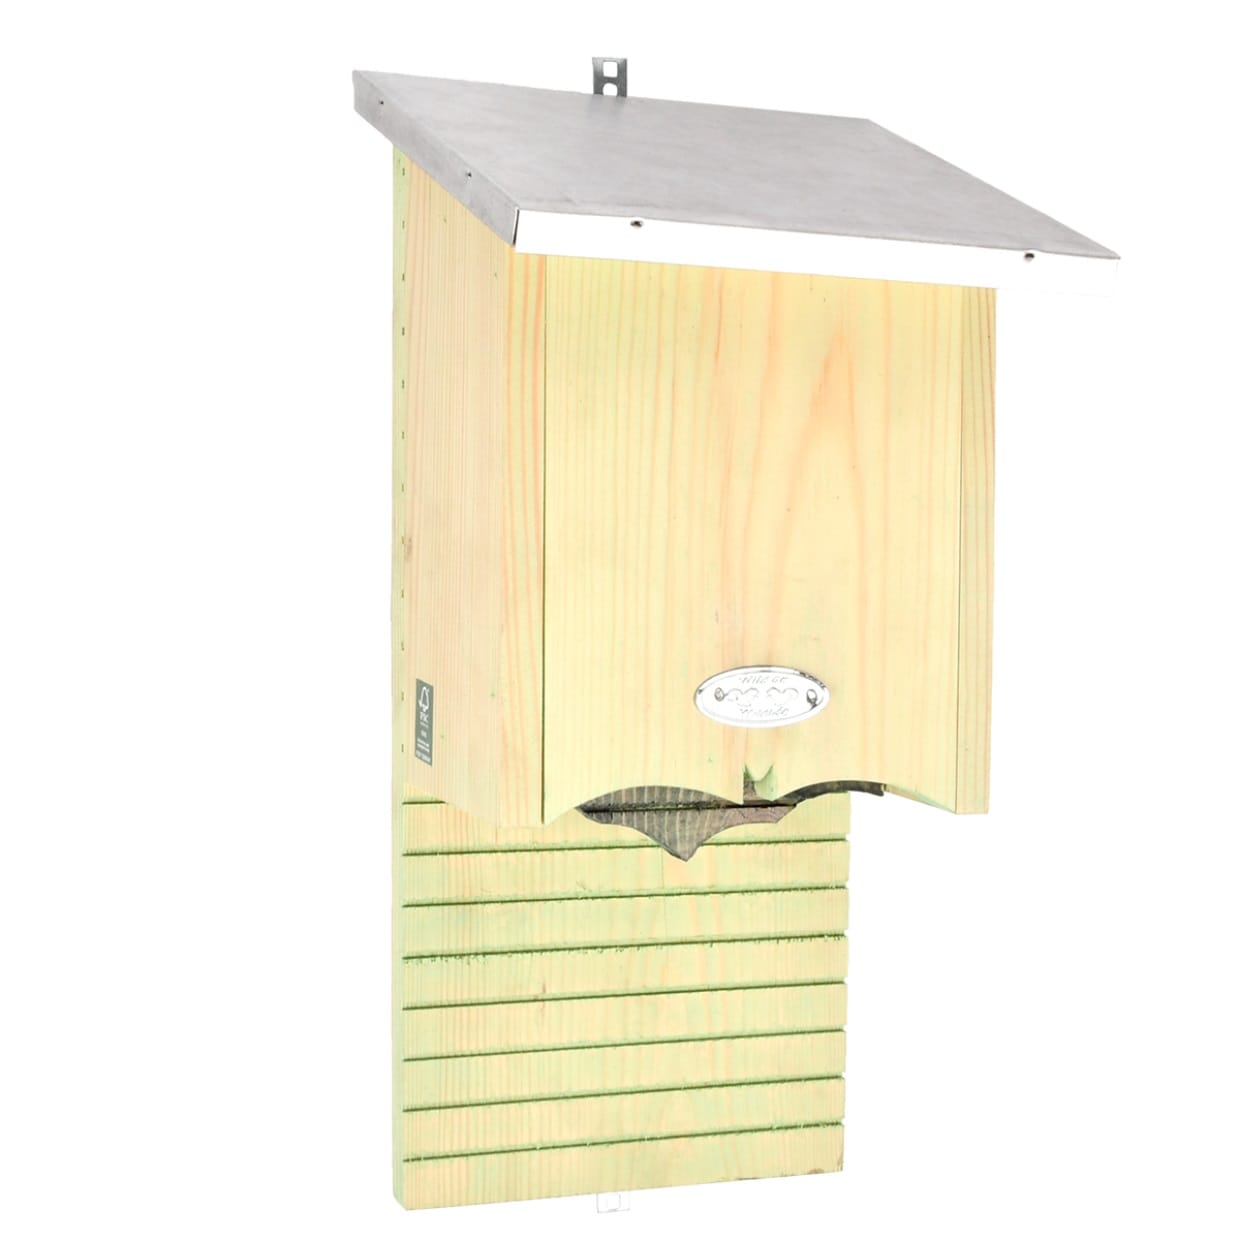 Maisons pour chauves-souris en plein air,Boîte d'habitat extérieur en bois  pour chauve-souris | Décoration extérieure en bois pour habitat de